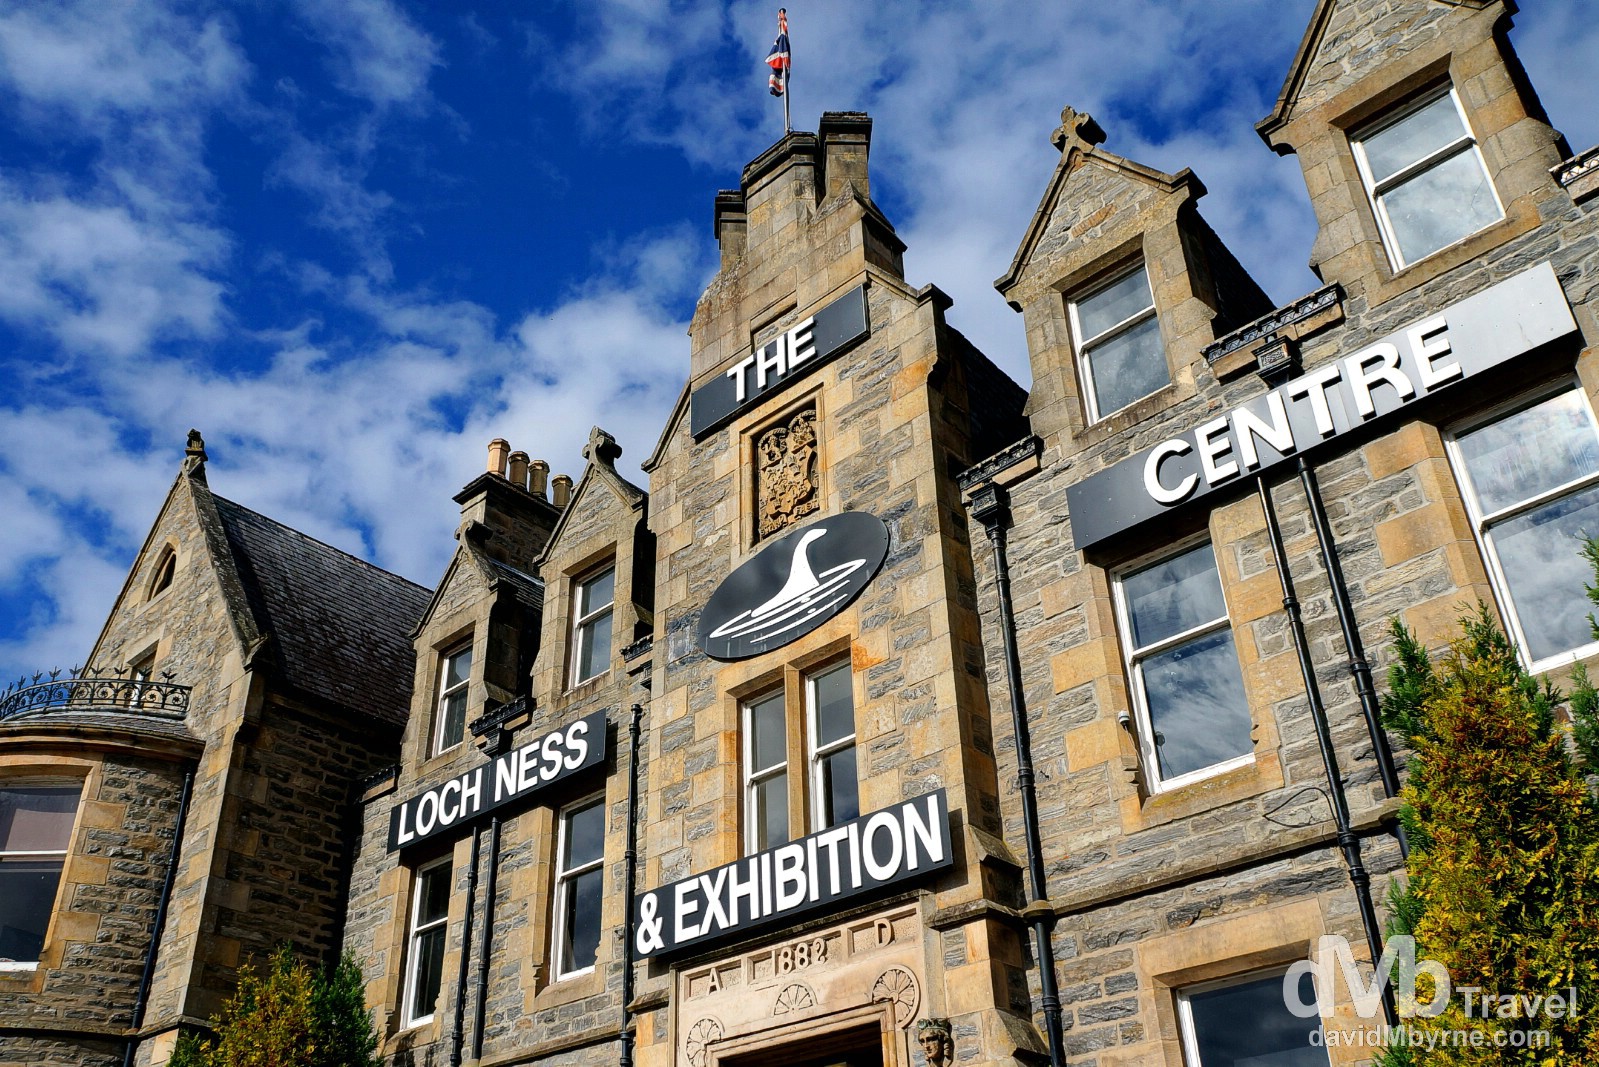 The Loch Ness Exhibition Centre at the Drumnadrochit Hotel in Drumnadrochit, Inverness, Scotland. September 16, 2014.